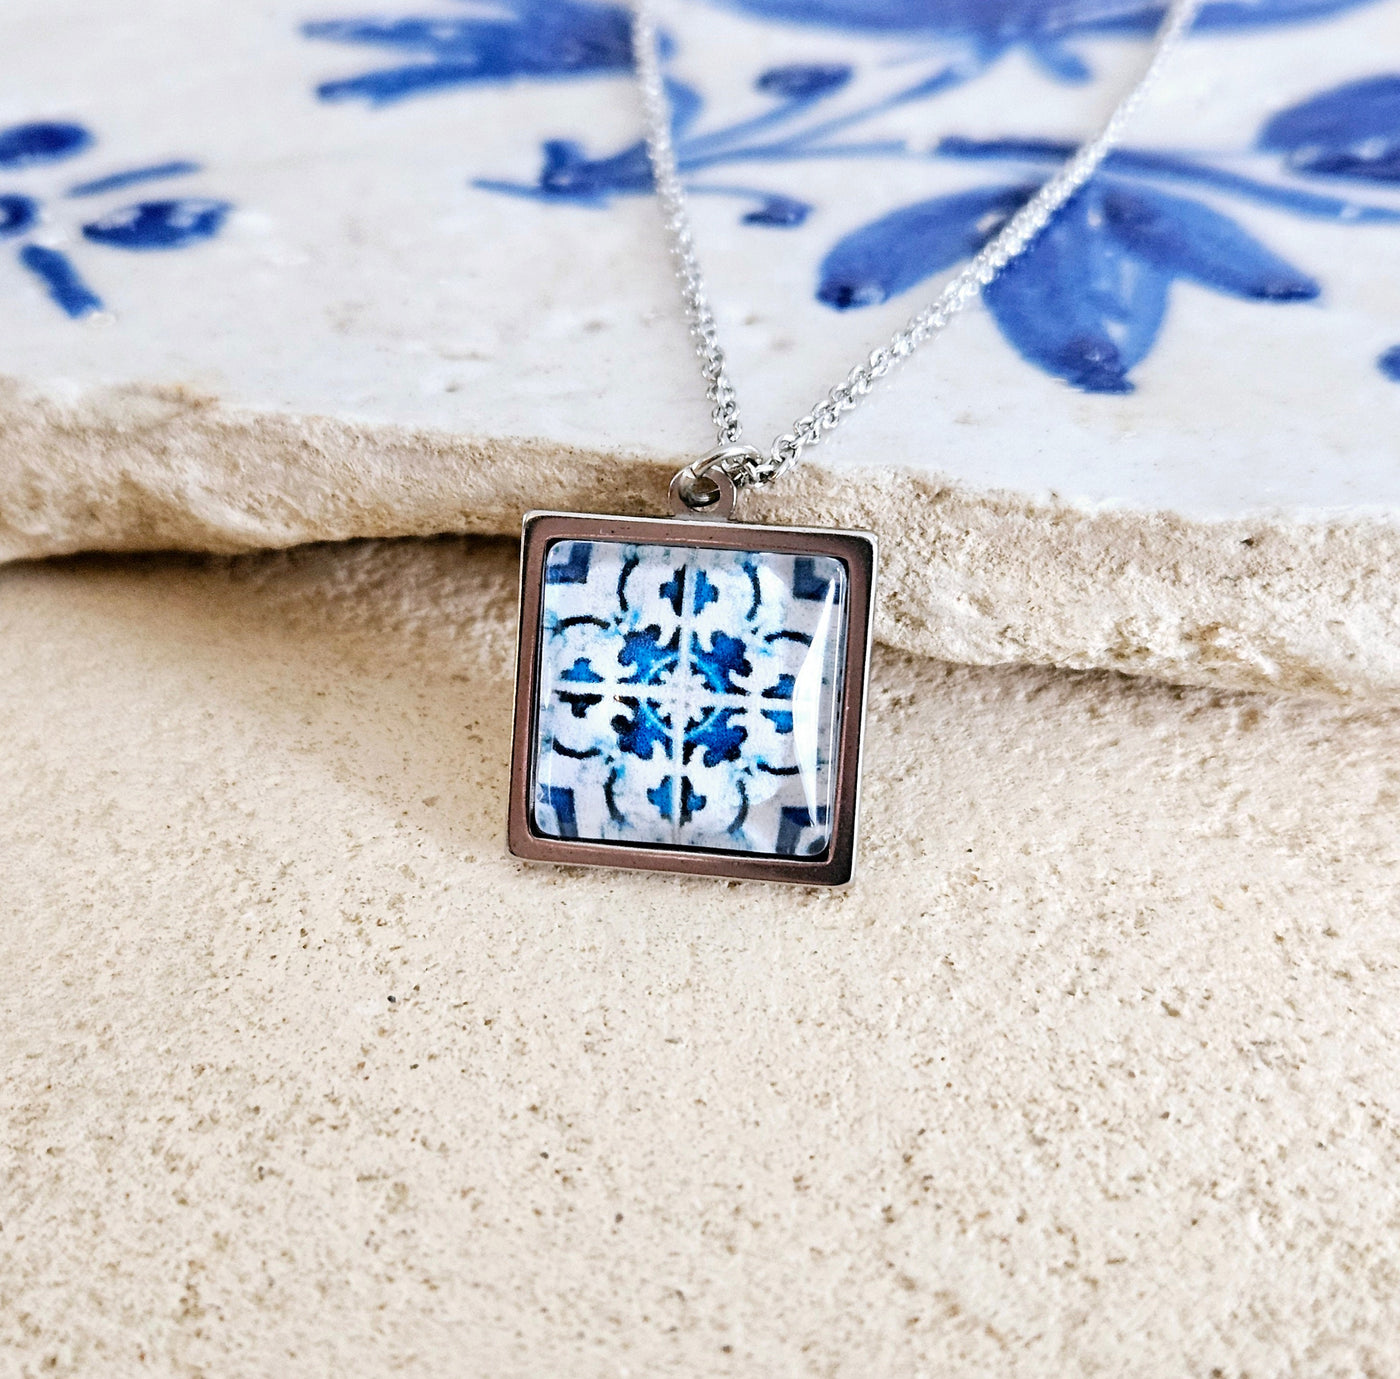 Lisbon Tile Charm STEEL Necklace Portuguese Blue White Tile Azulejo Silver Pendant Square Necklace Tile Portugal Gift Handmade Souvenir